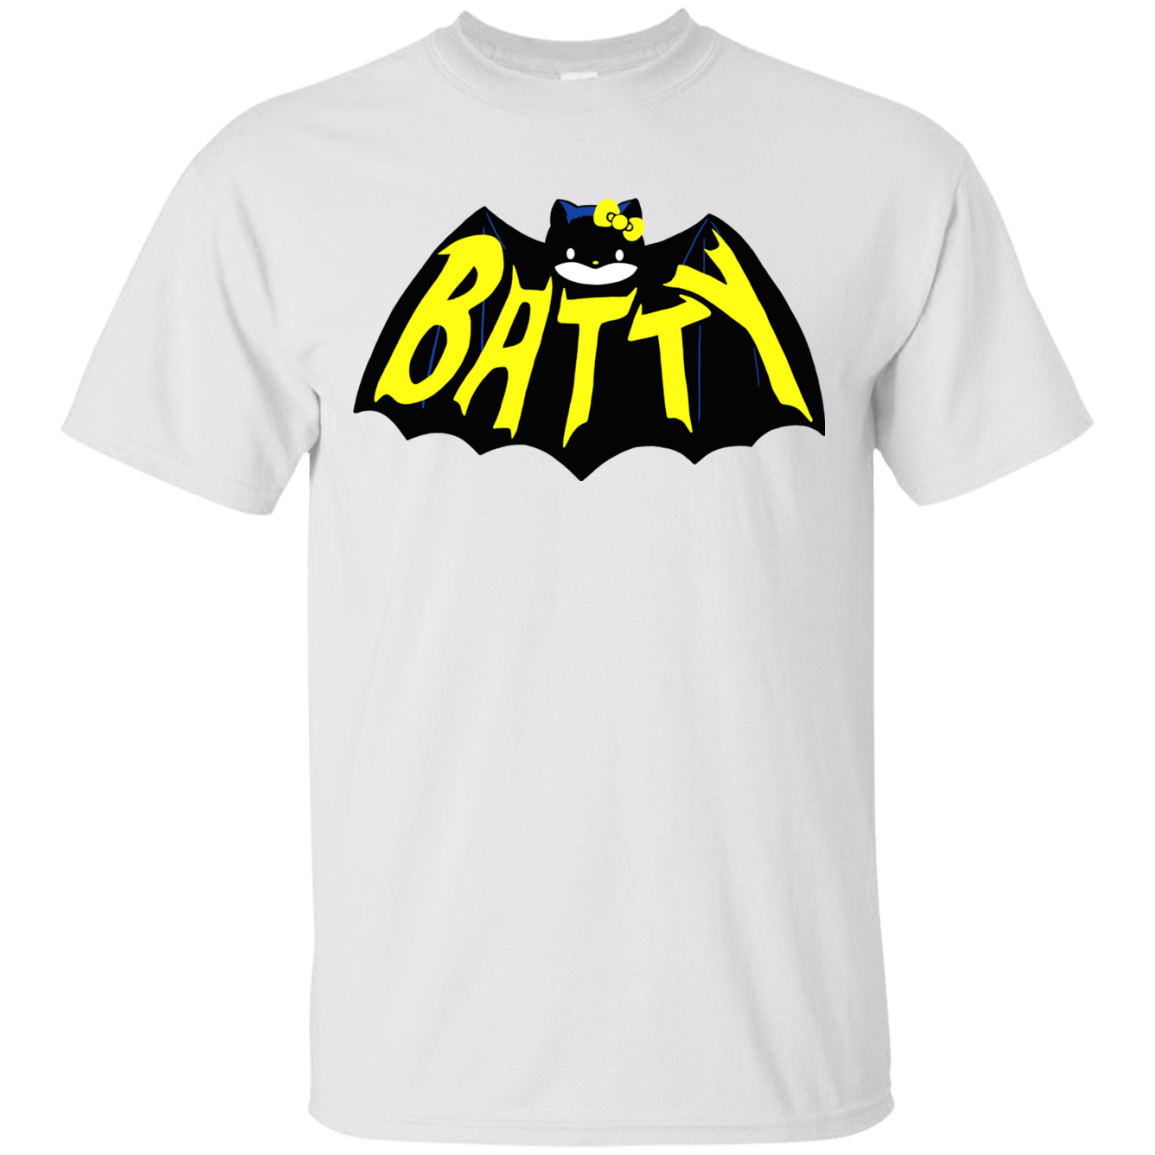 T-Shirts White / S Hello Batty T-Shirt